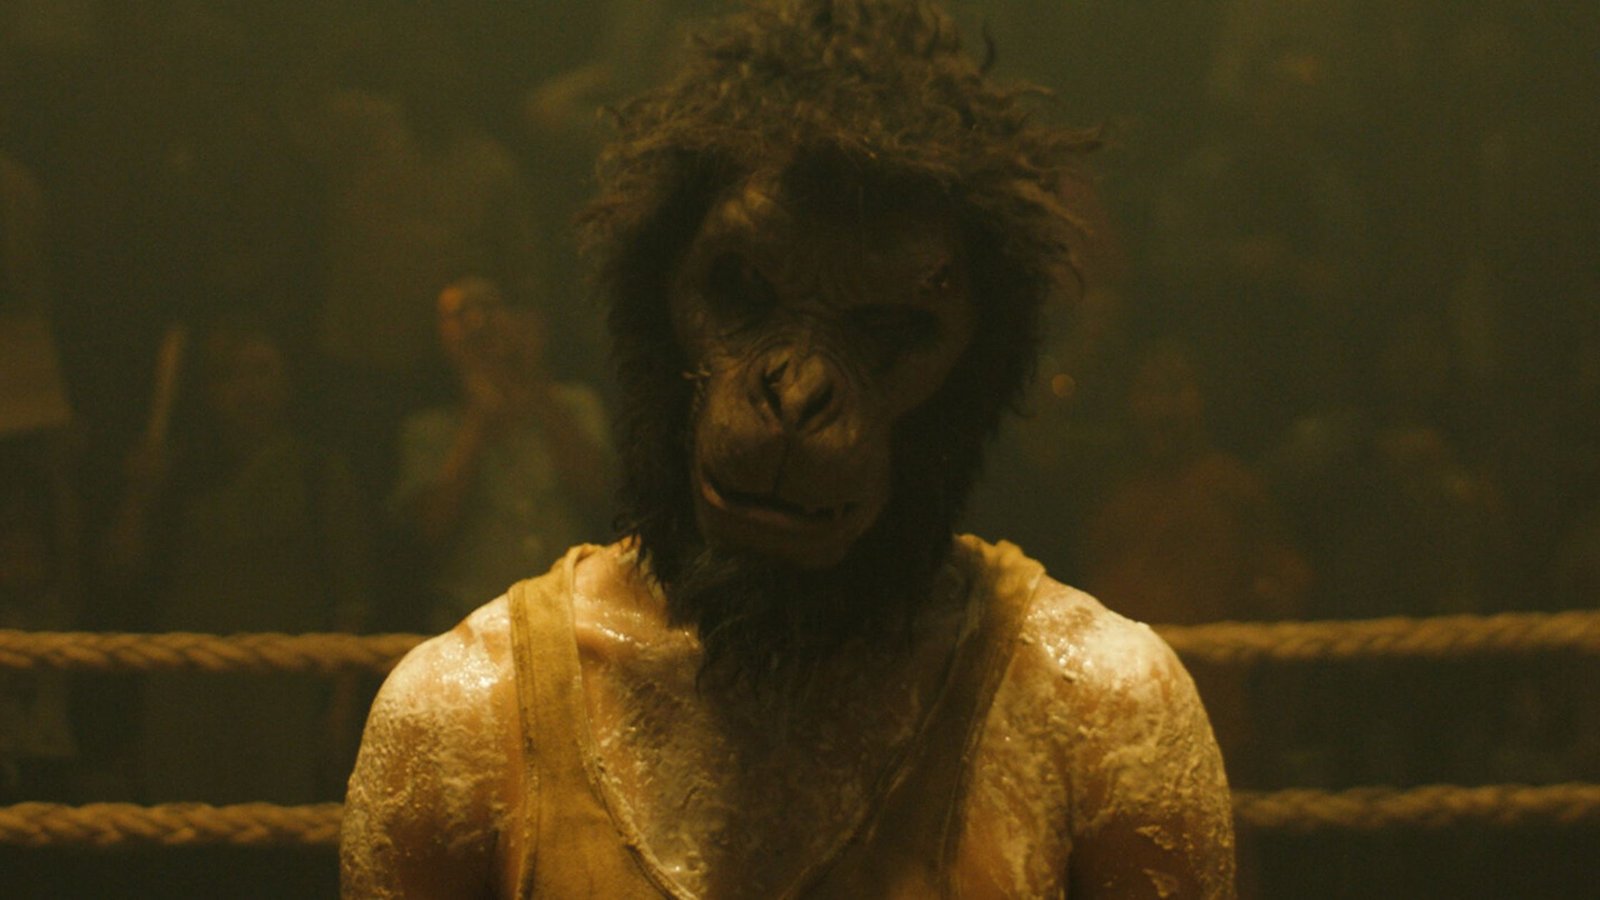 Monkey Man Movie Download Dev Patel